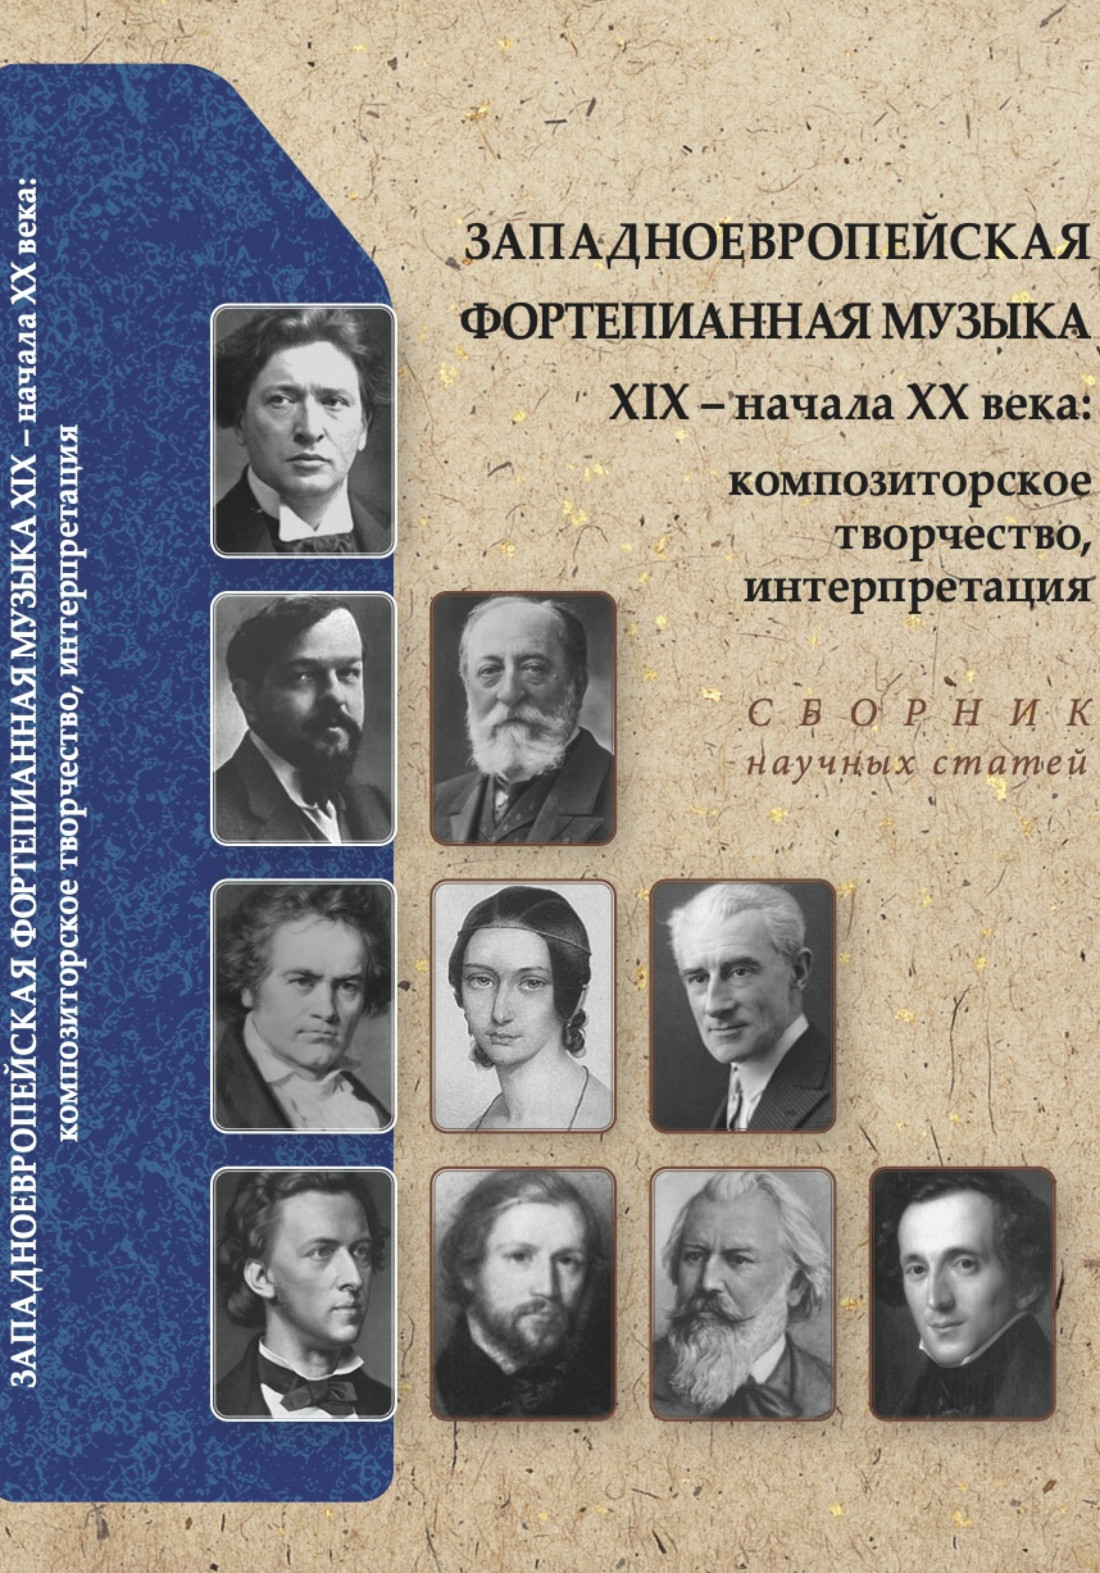 Сборник посвящен фортепианному творчеству западноевропейских композиторов, рассматриваемому в историческом контексте, а также особенностям современного подхода к изучению нотного текста и исполнительской интерпретации. 